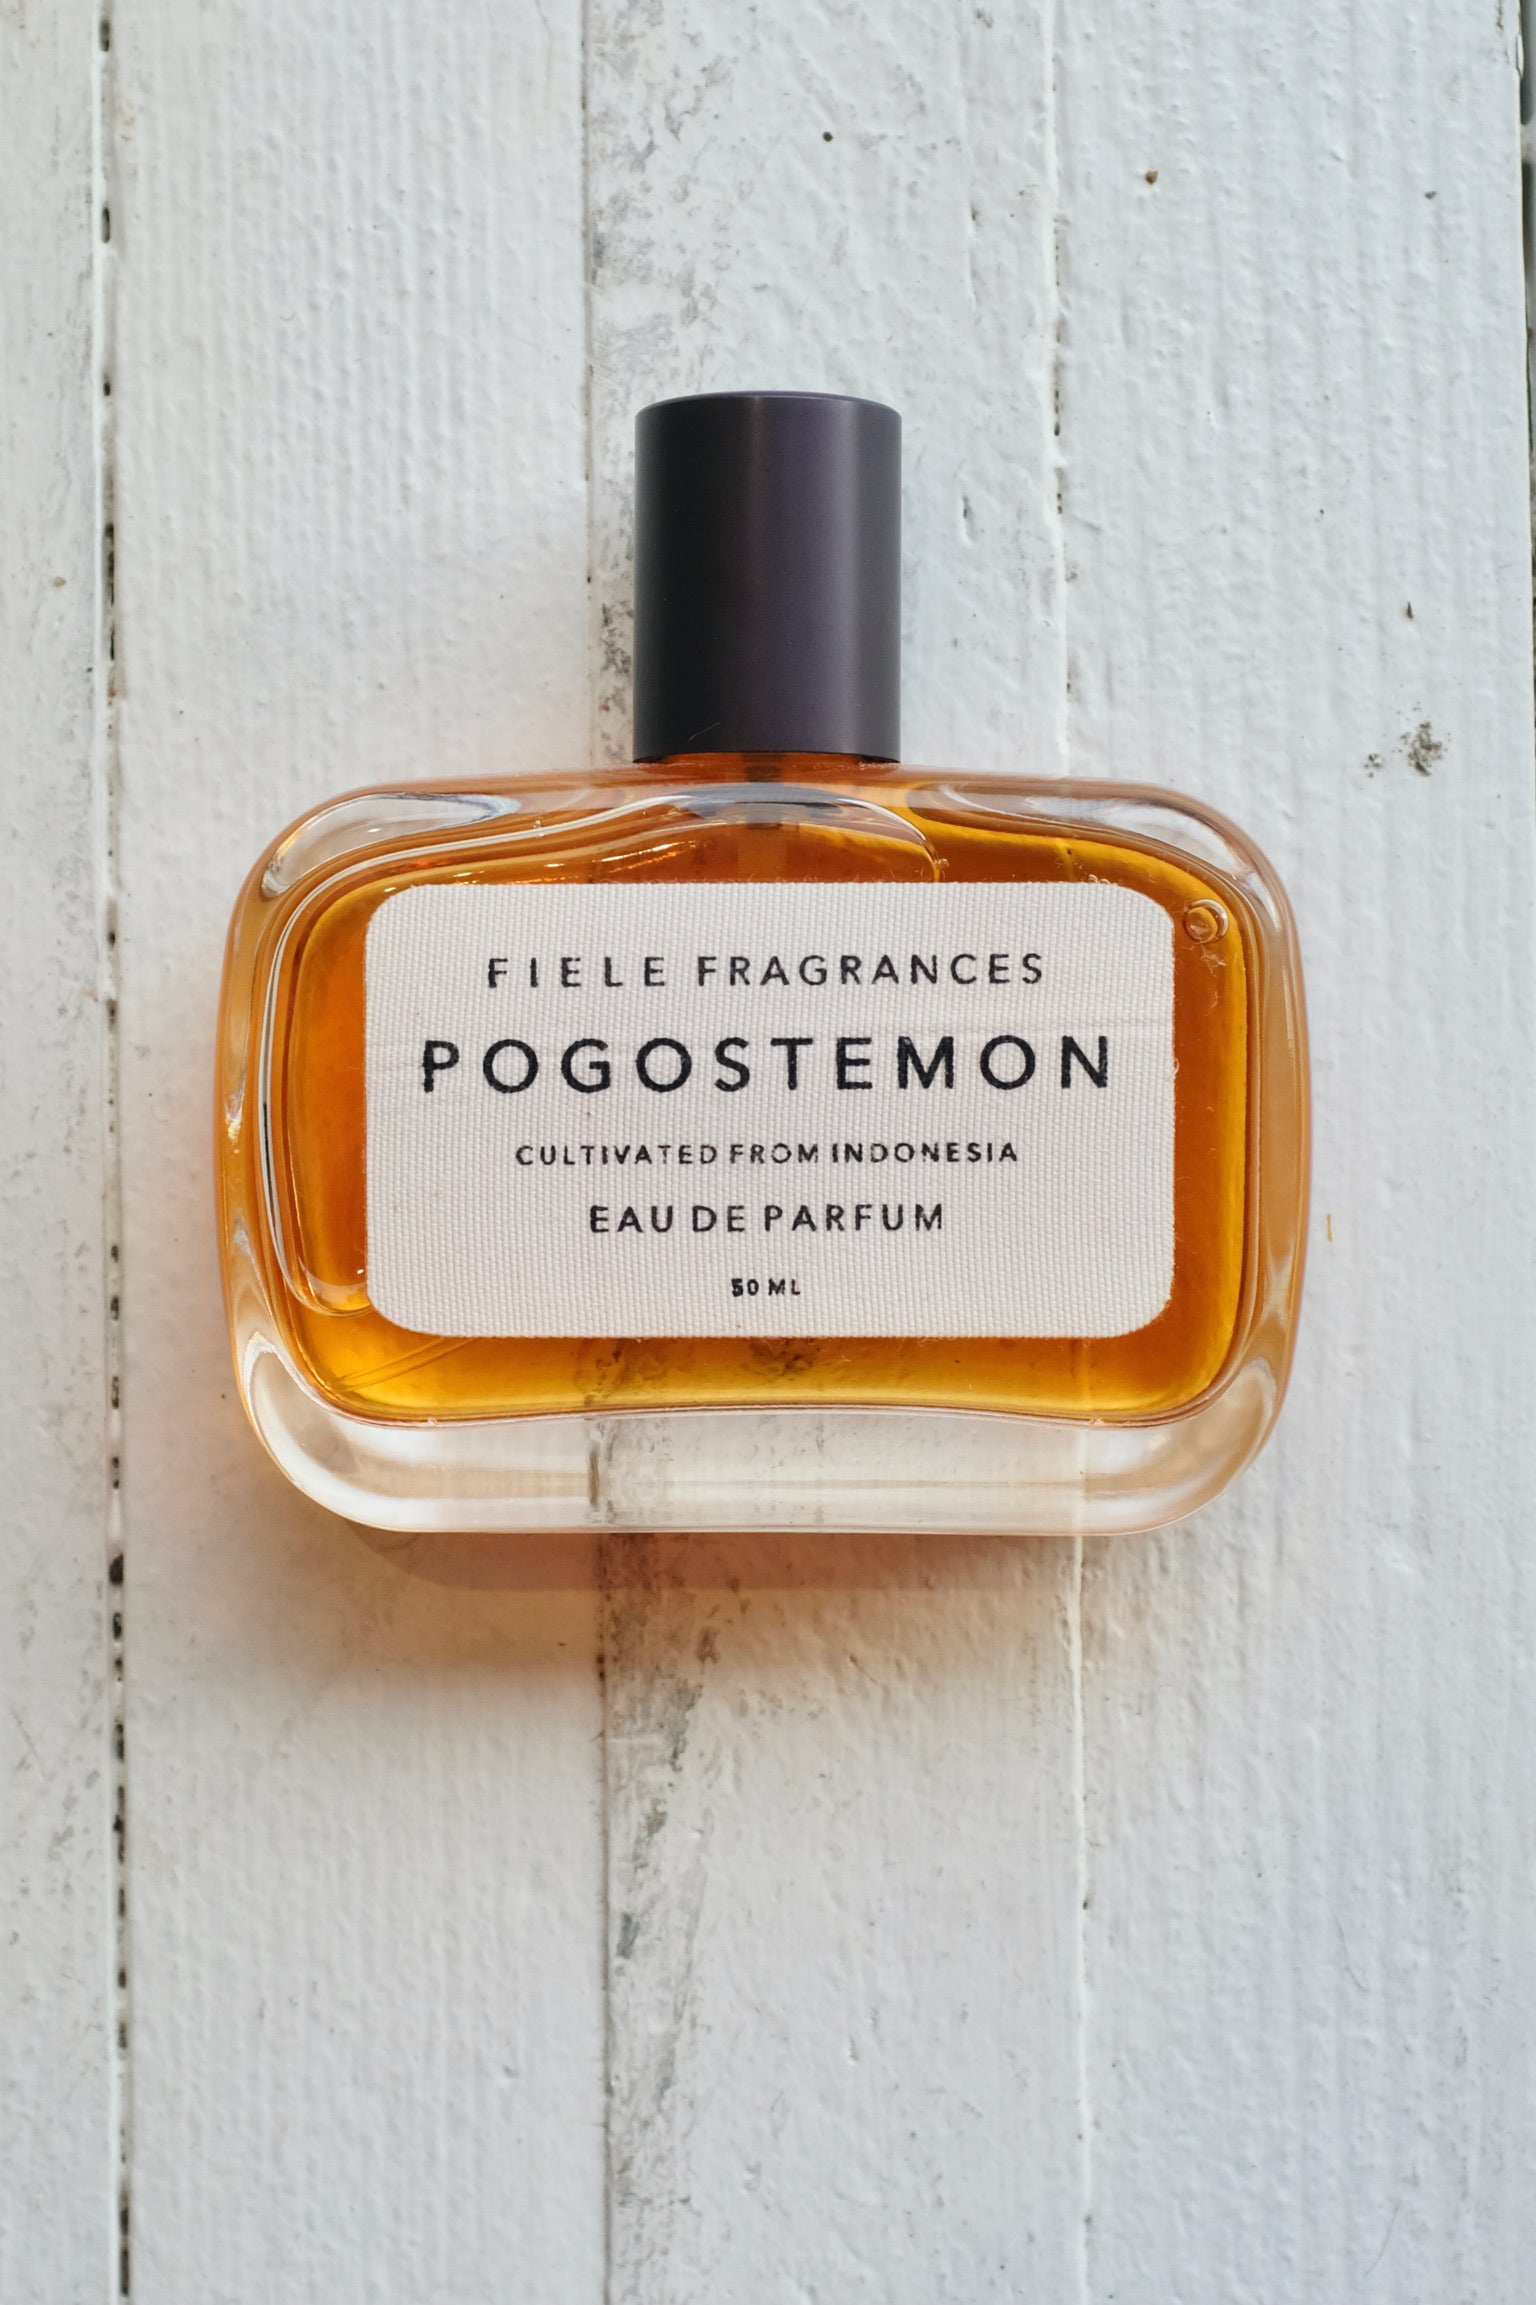 Fiele Eau De Parfum / Pogostemon